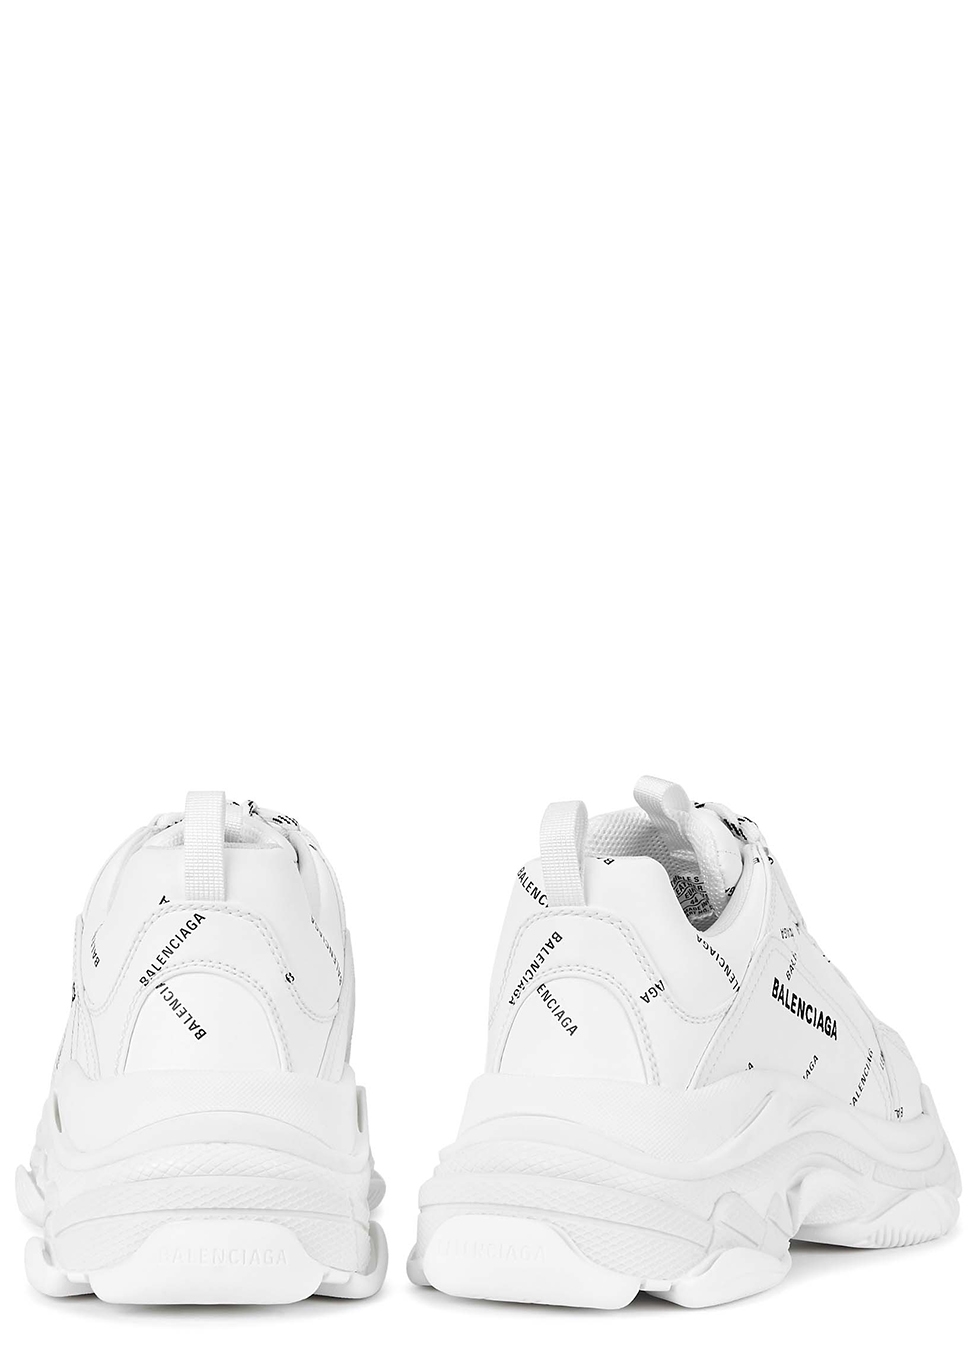 Balenciaga Triple S White Grey Turquoise Sneaker StockX